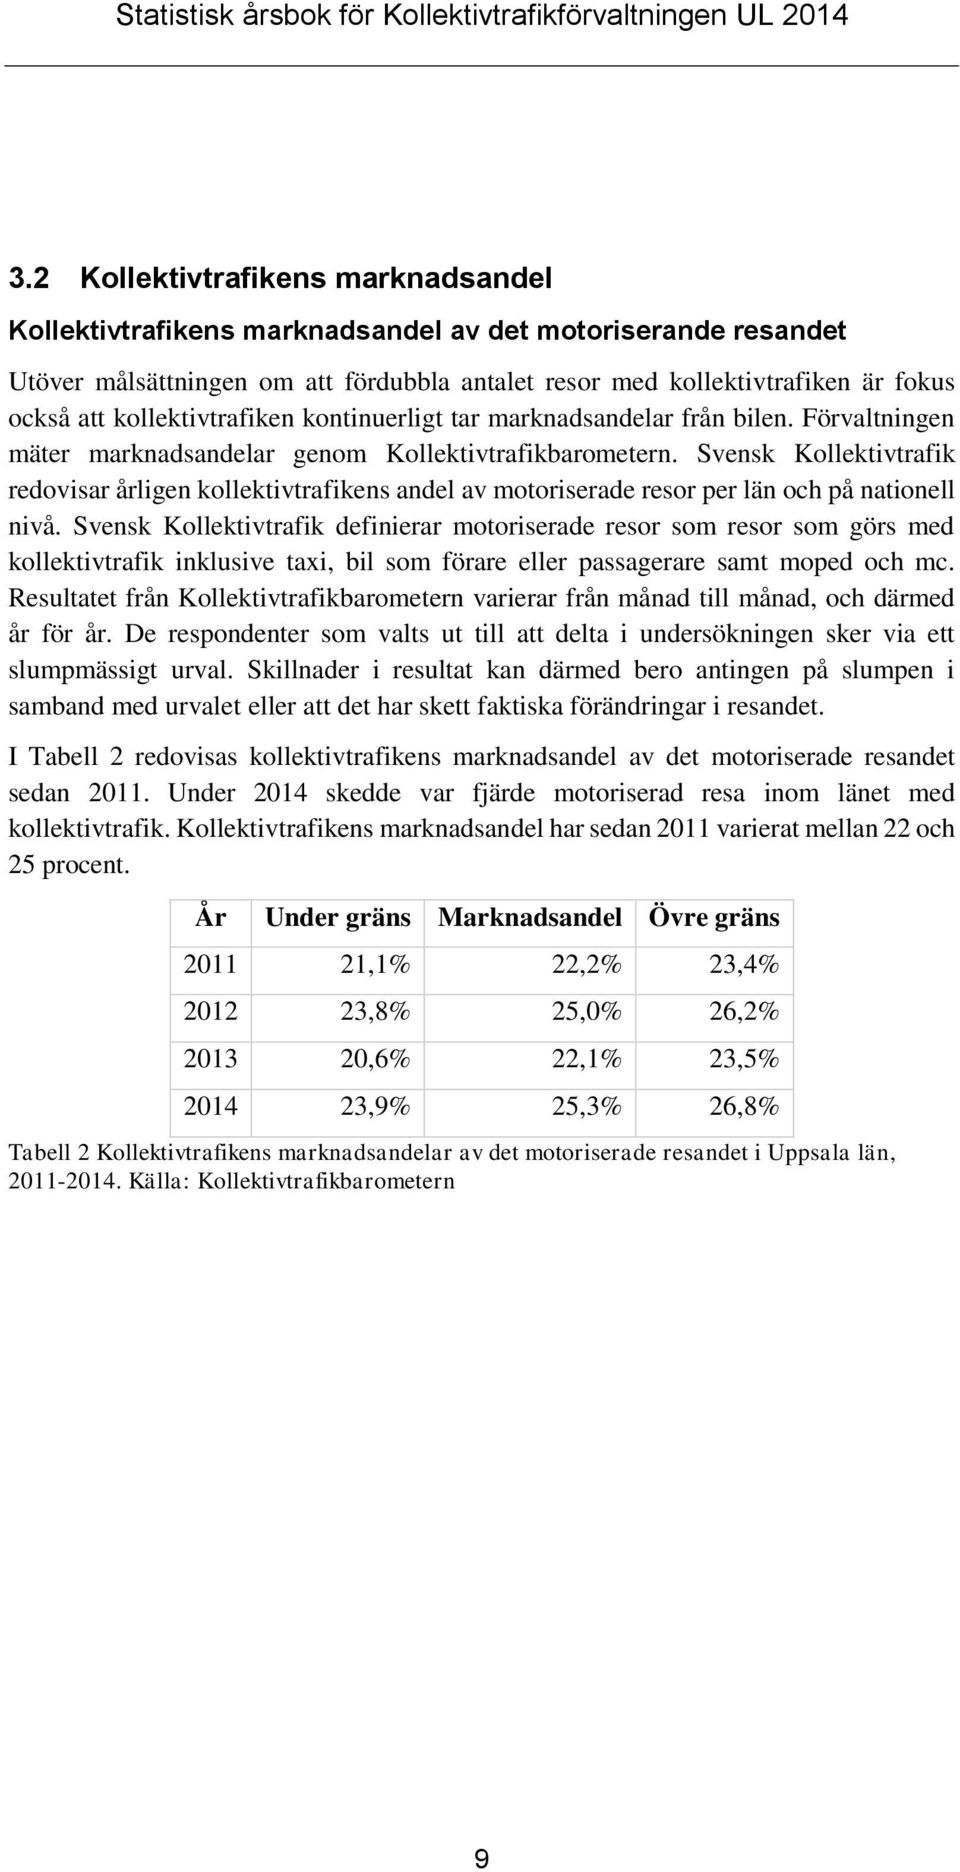 Svensk Kollektivtrafik redovisar årligen kollektivtrafikens andel av motoriserade resor per län och på nationell nivå.